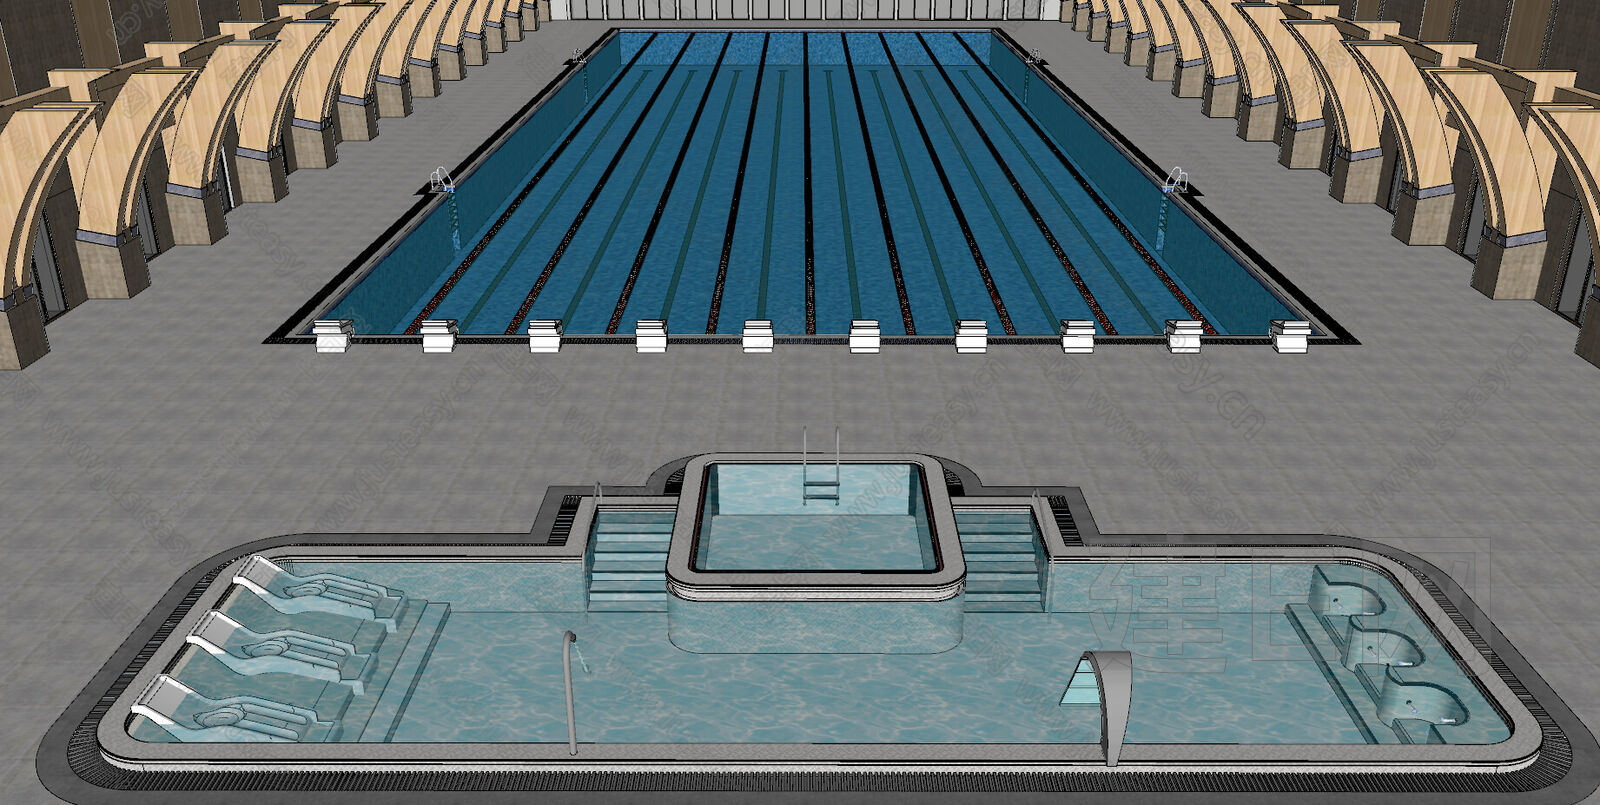 五星级酒店游泳池水处理设计施工图-水处理施工图-筑龙给排水论坛